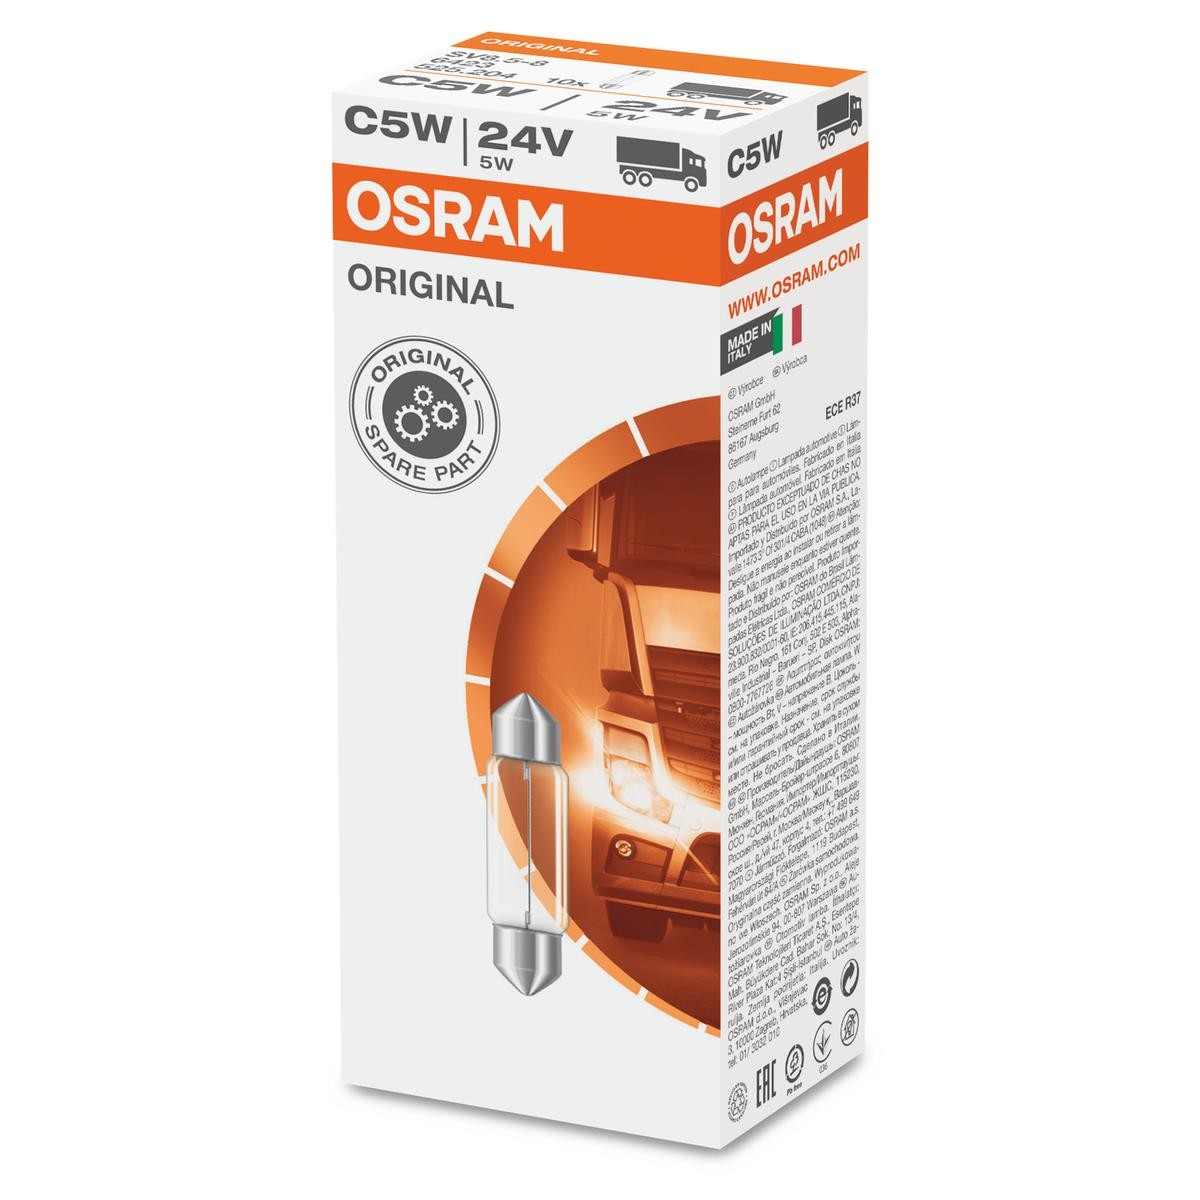 6423 OSRAM Number plate light bulb RENAULT 24V 5W, C5W, SV8.5-8